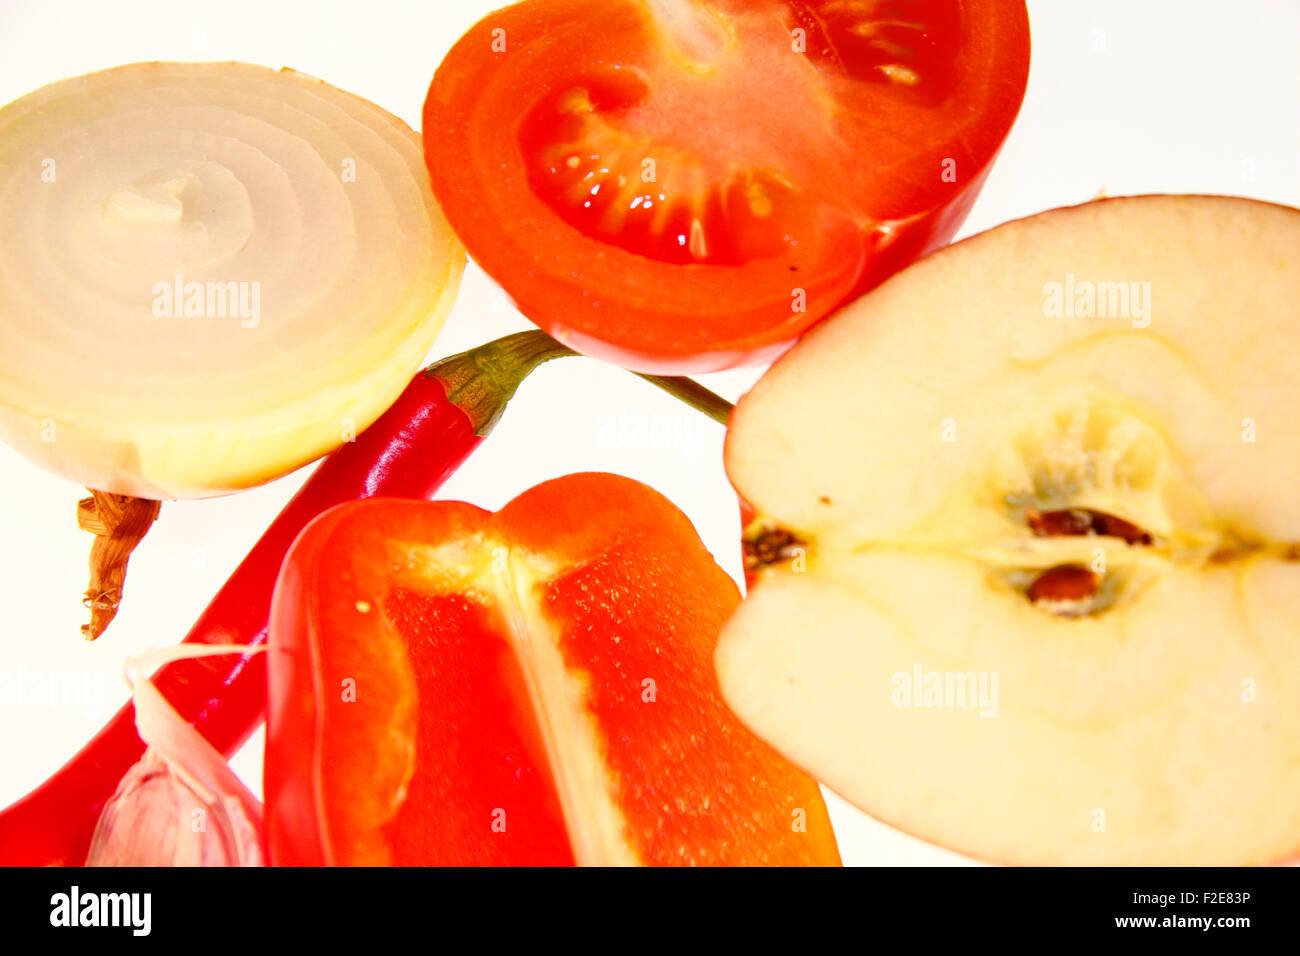 Obst/ Gemuese: rote Chillyschote, Tomaten, Knoblauch, Mandarinen, Zwiebel - Symbolbild Nahrungsmittel . Stock Photo